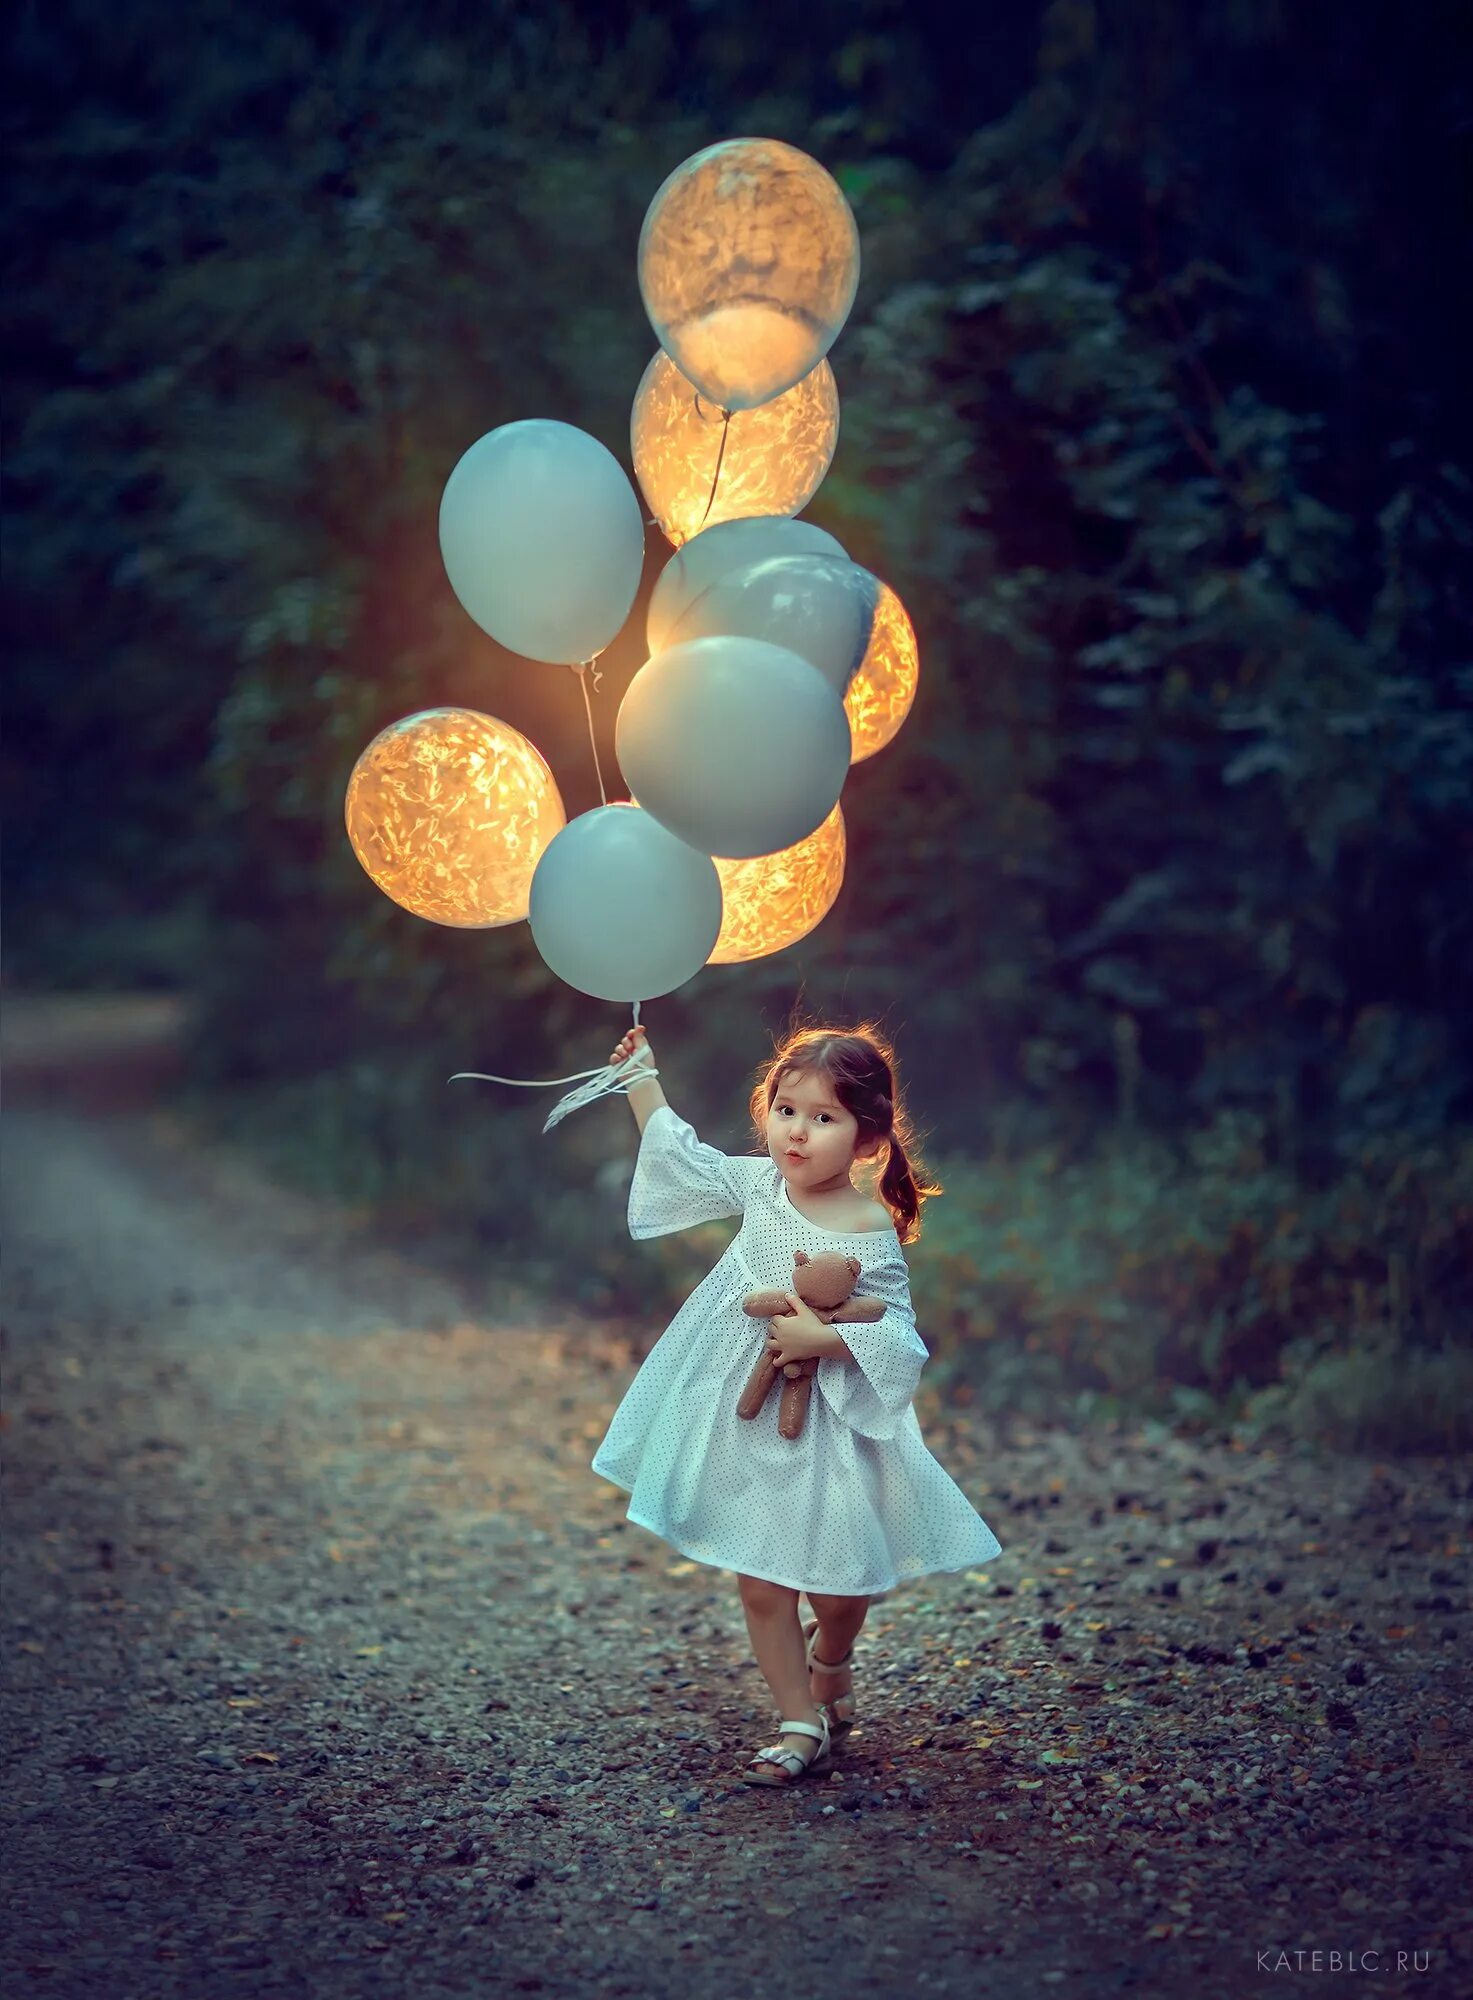 Идеи фотосессии девочки. Фотосессия с шарами. Девочка с шариками. Фотосет с шарами. Фотосессия с воздушными шарами на природе.